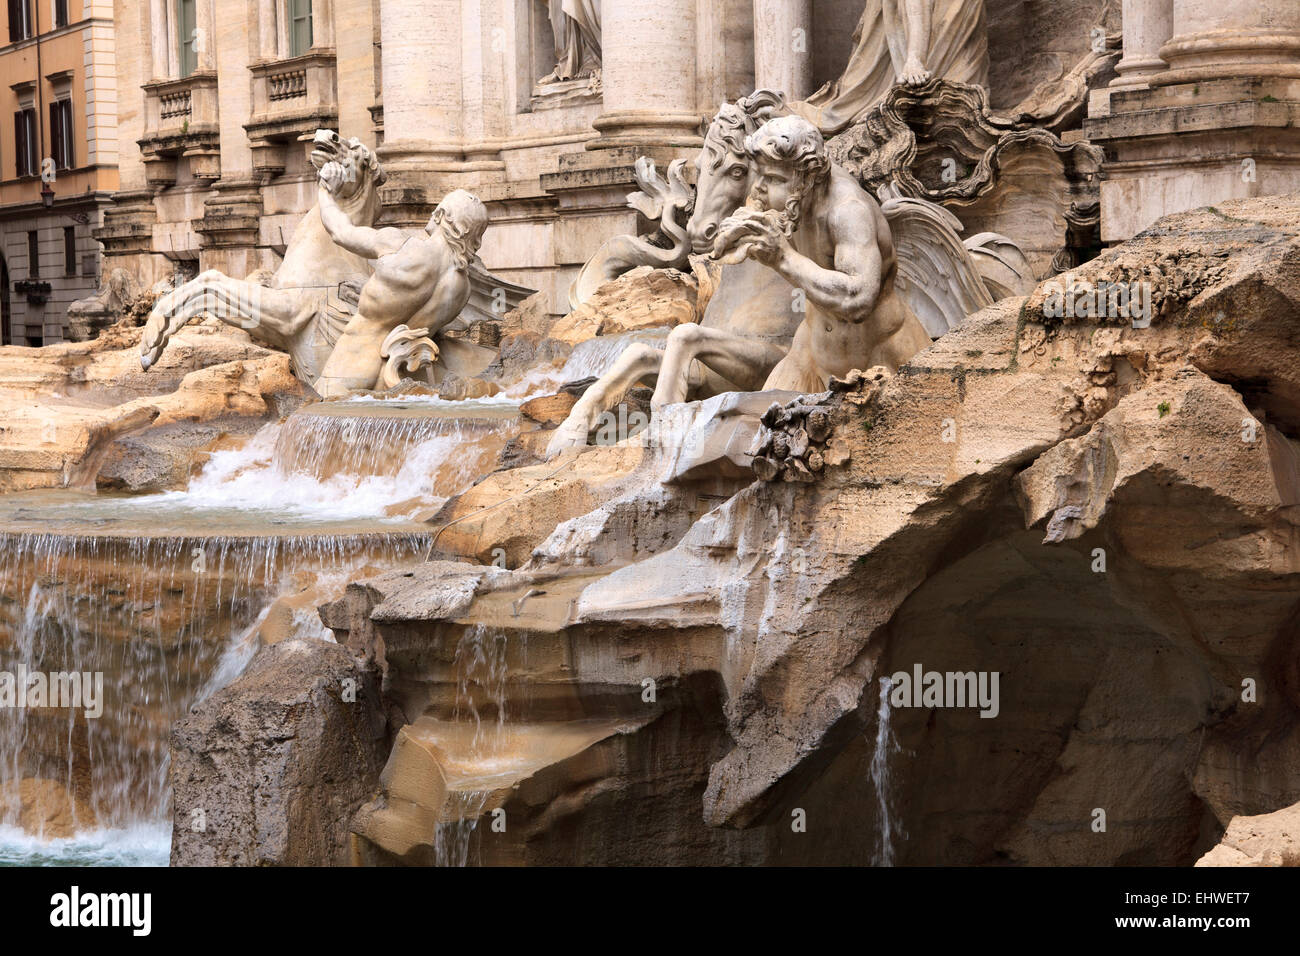 Fontana di Trevi, Rome, Italie. Banque D'Images